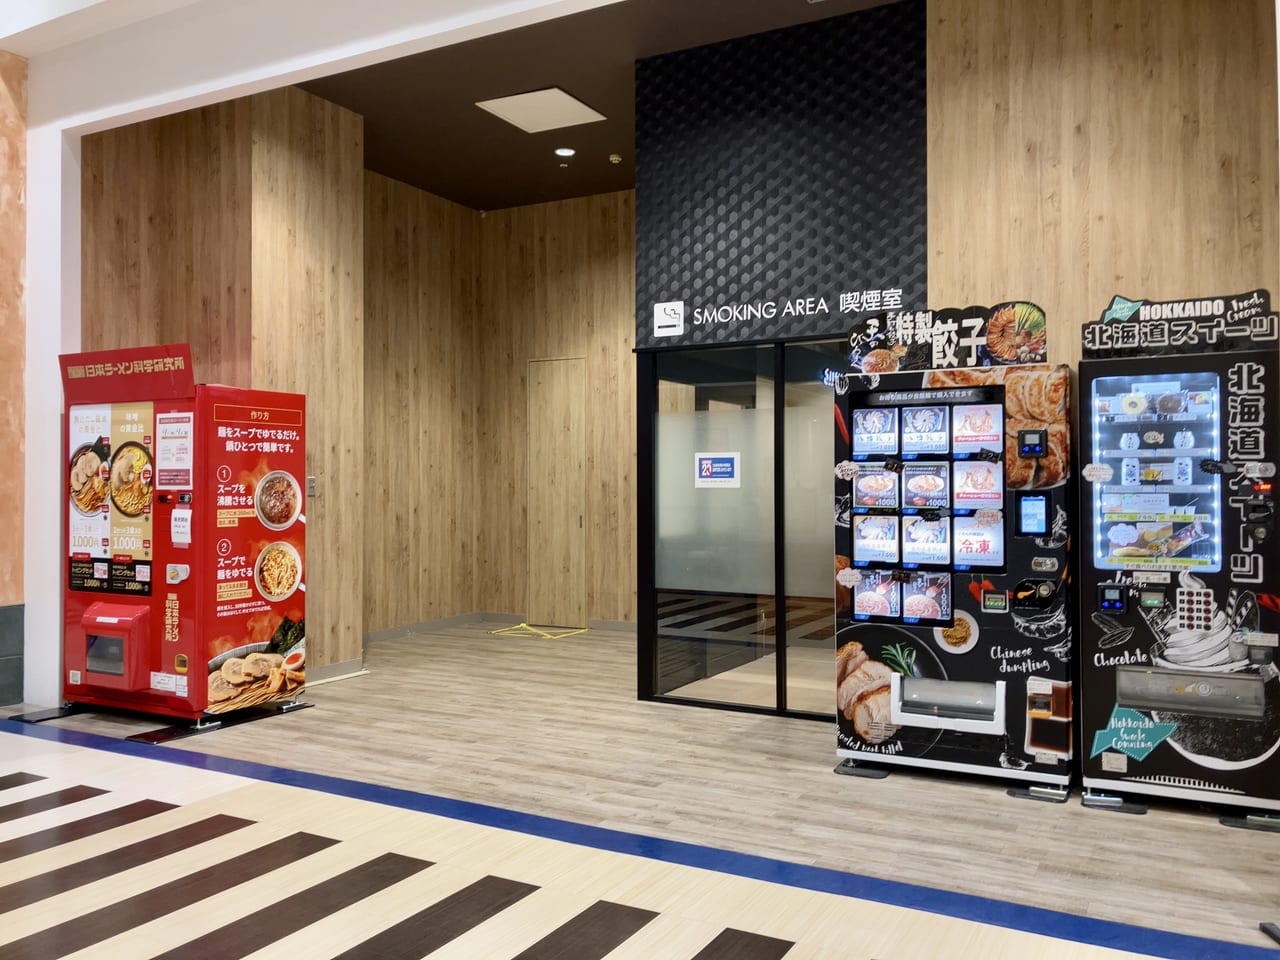 「イオンモール札幌苗穂」に今度はラーメンの自動販売機がやってきたよ。